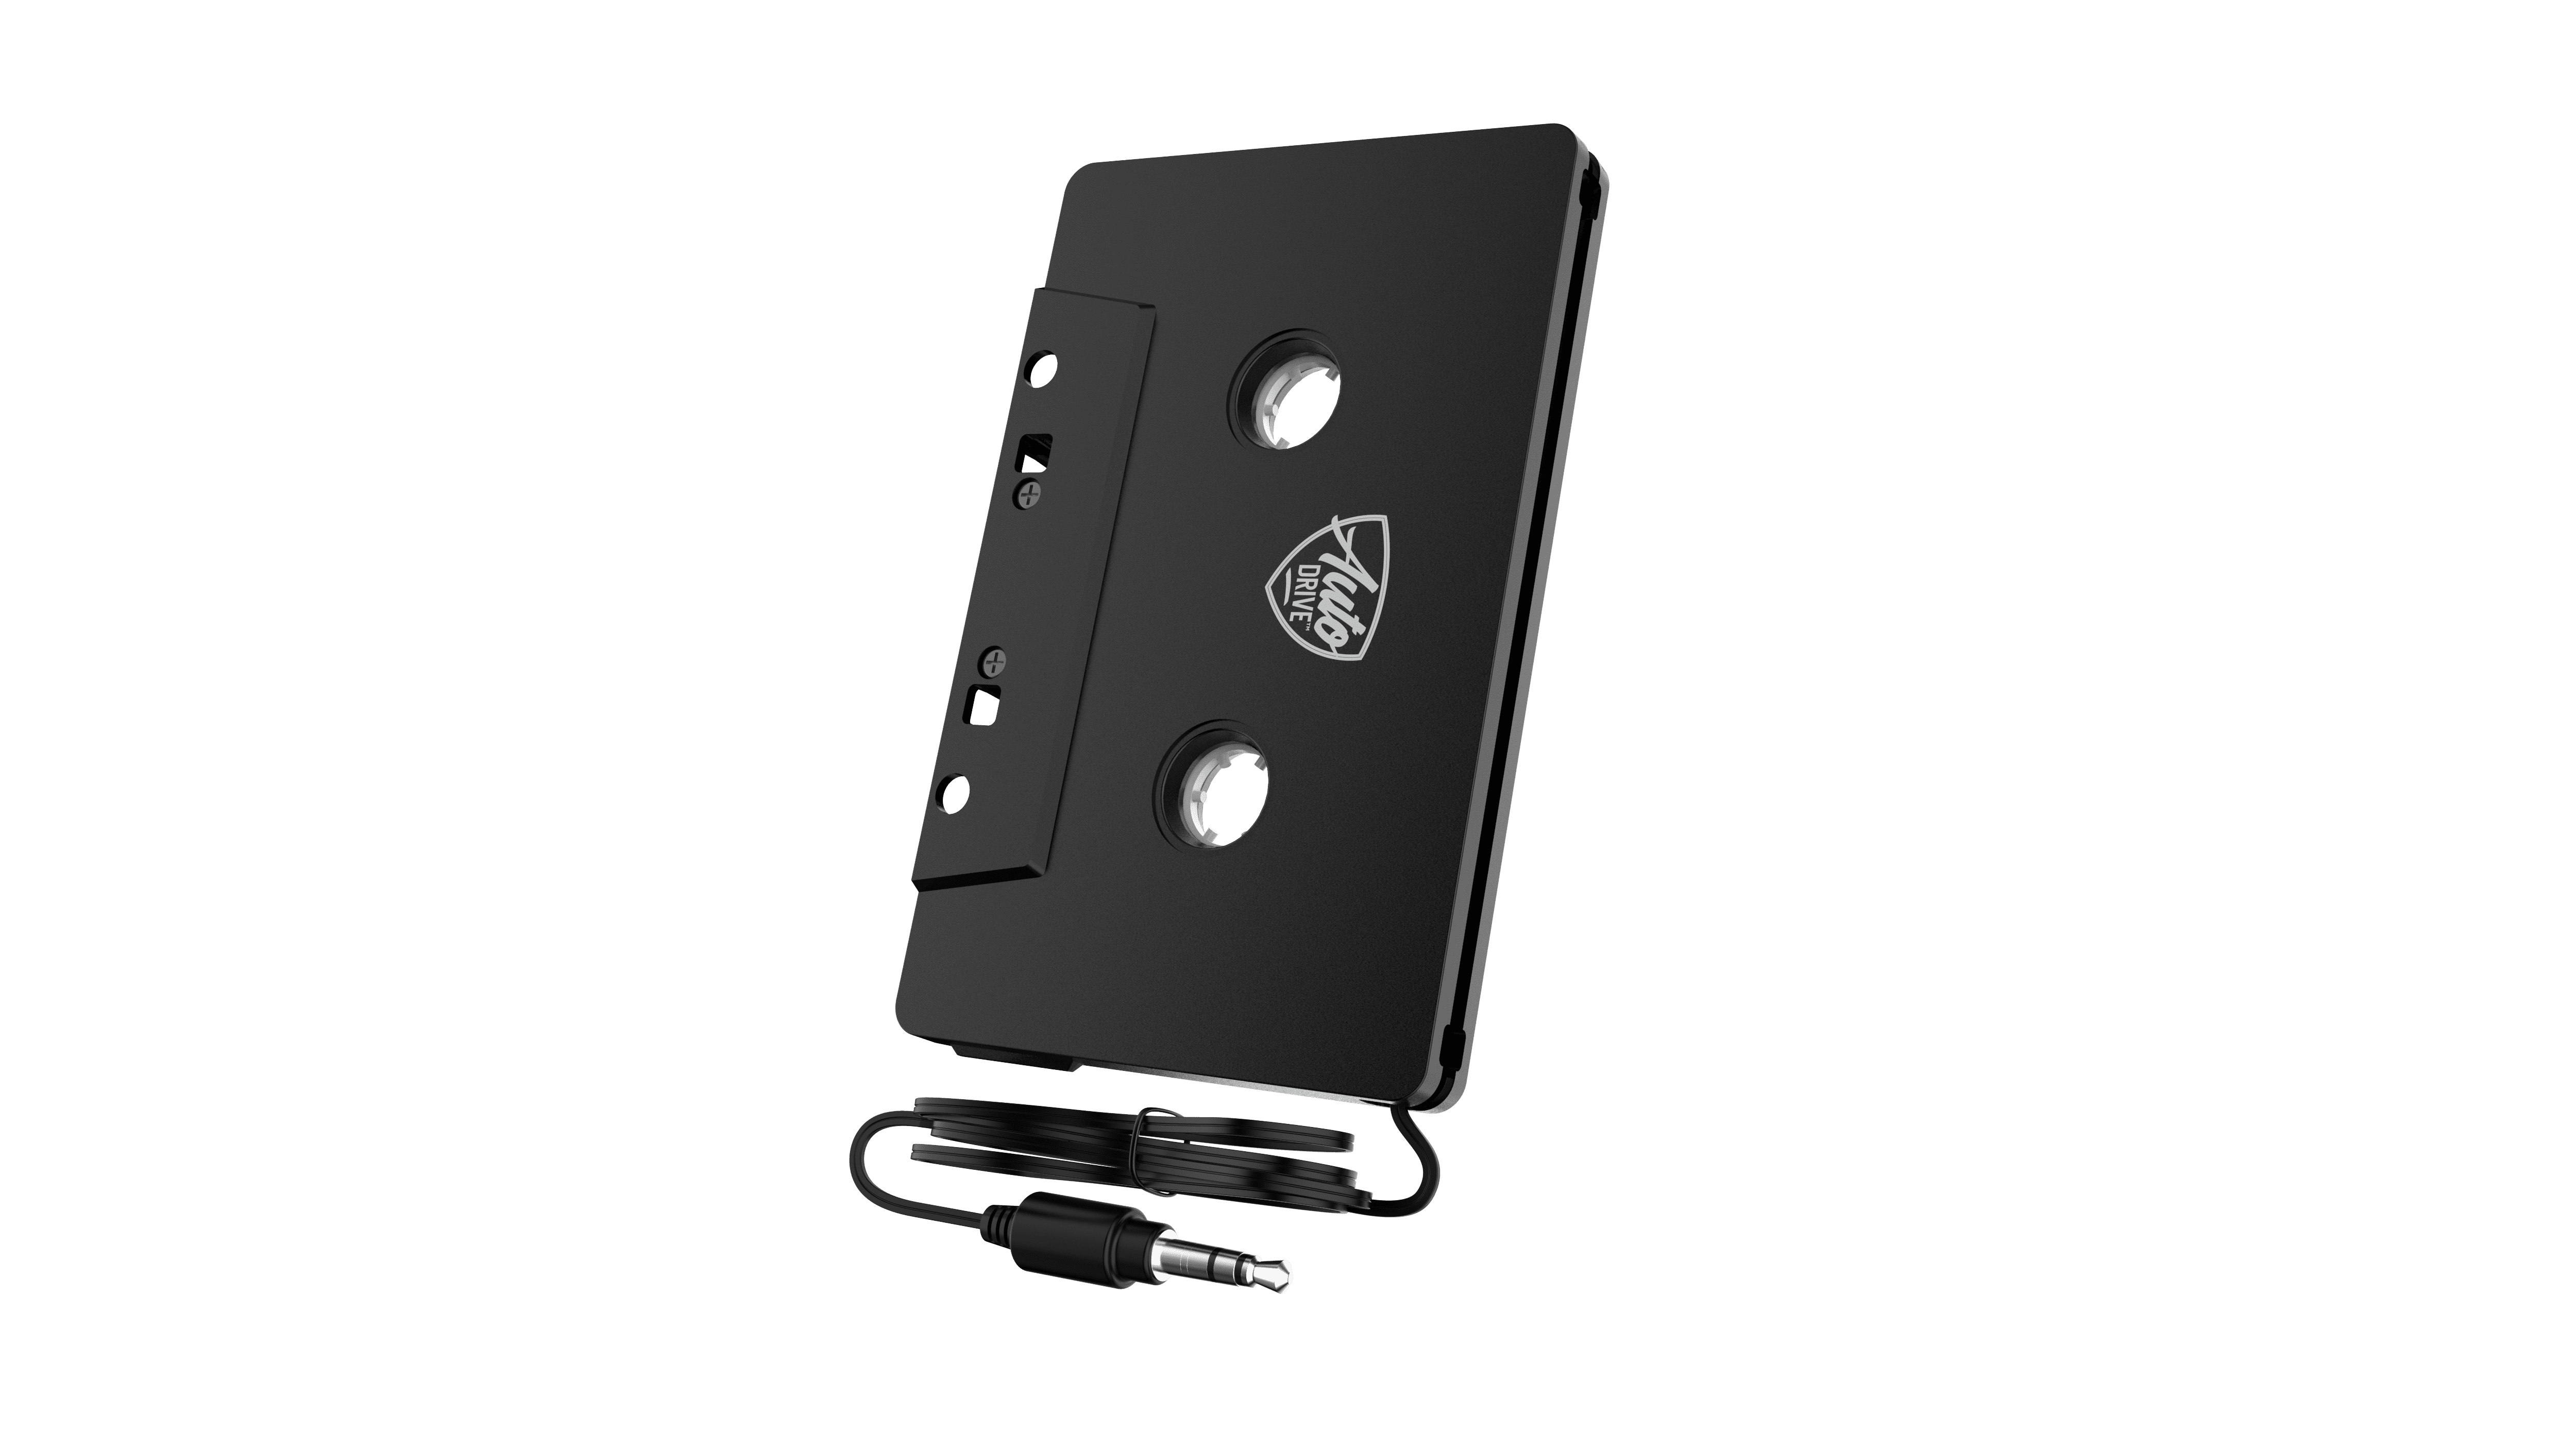 Adaptateur Cassette/Jack D2 K7 Auto radio/MP3